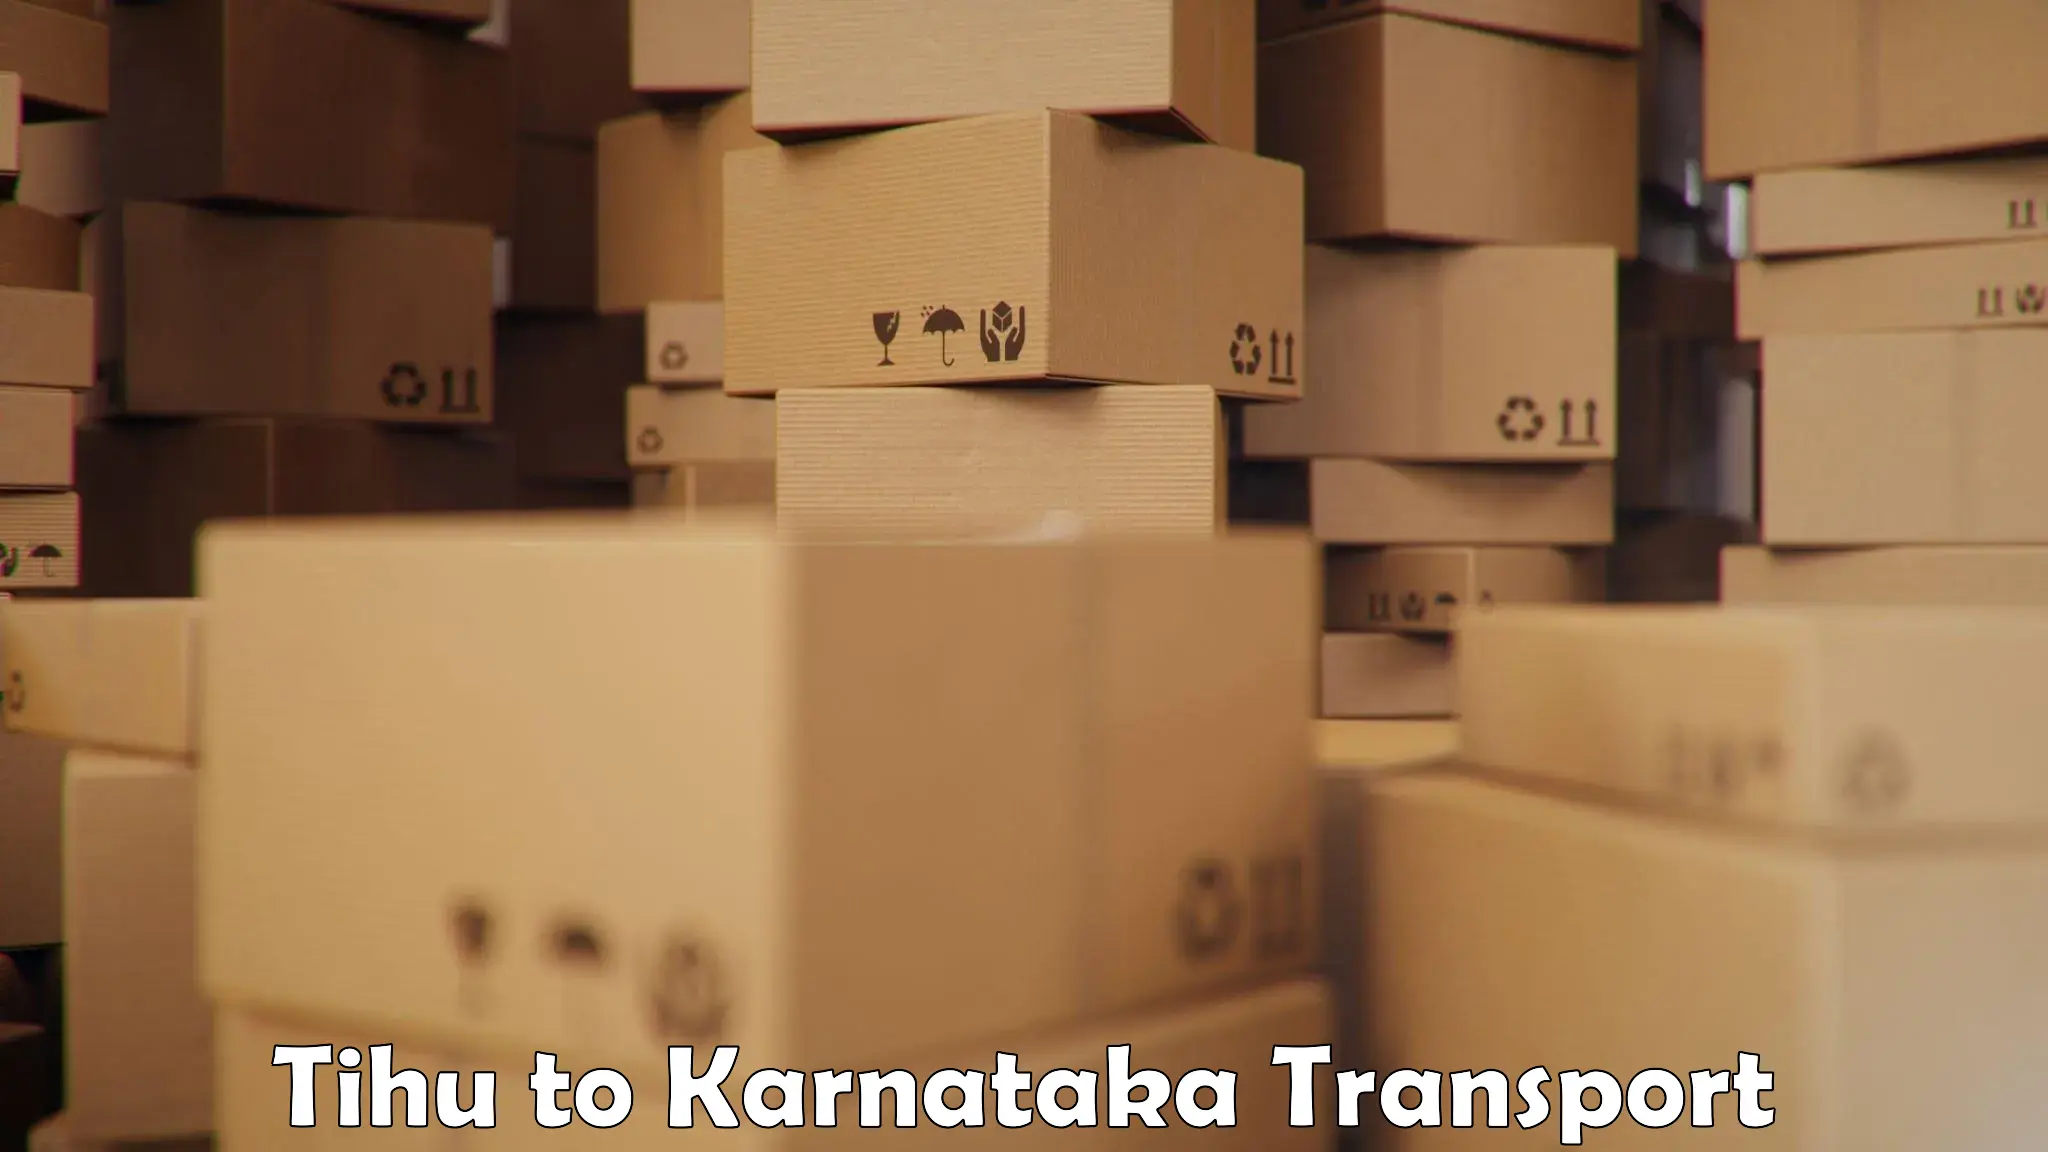 Shipping services Tihu to Kanjarakatte